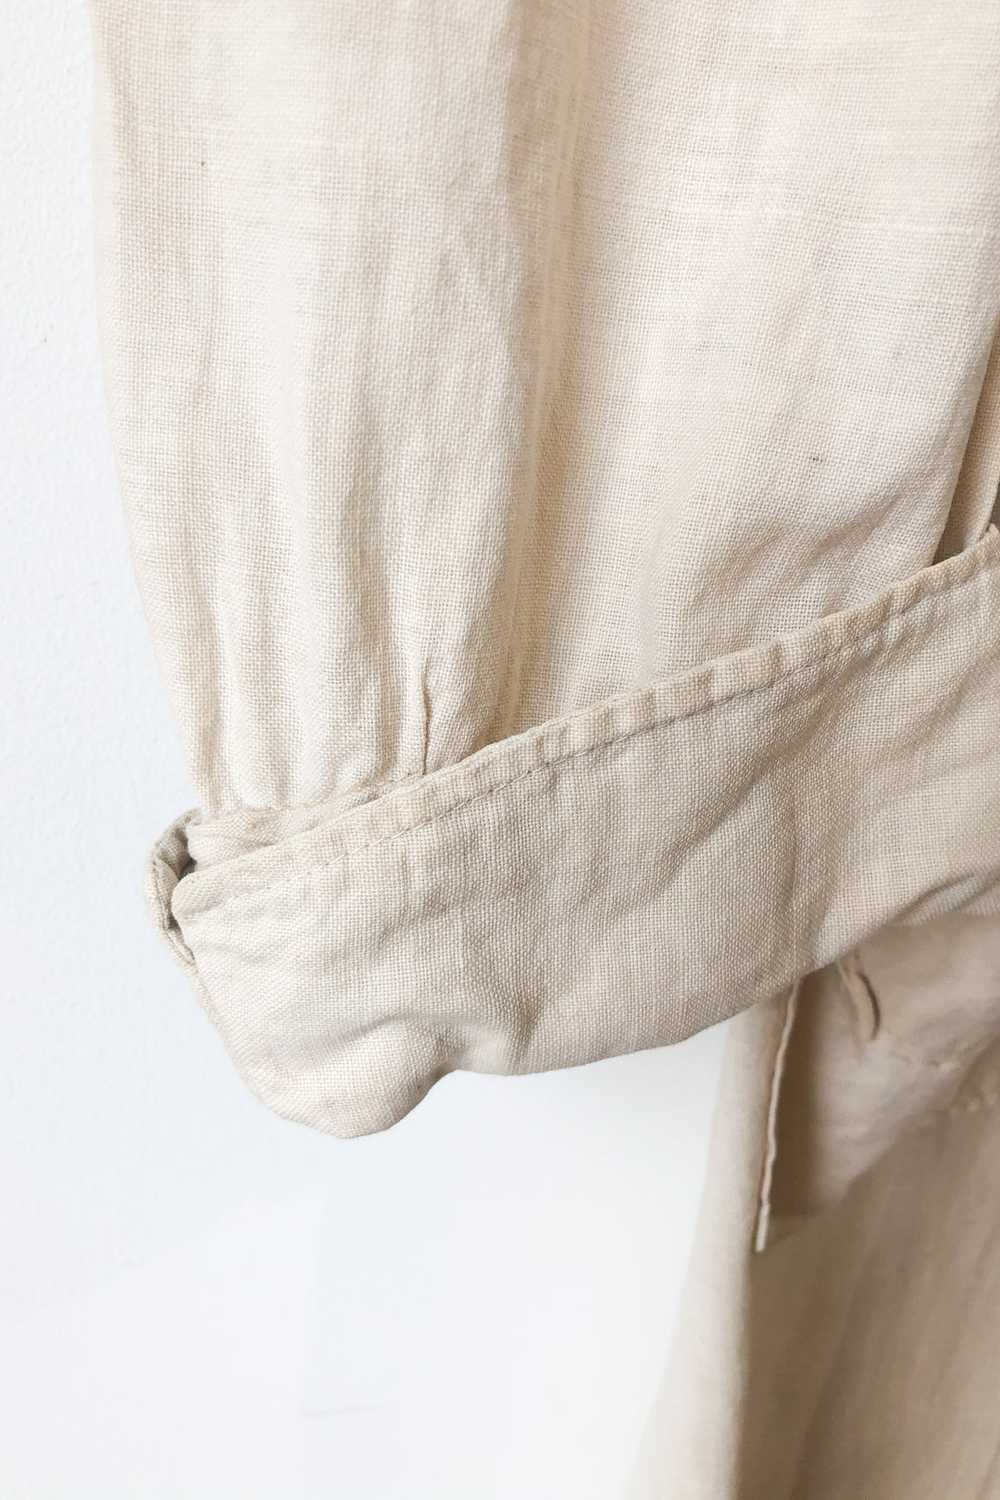 Vintage White Cotton Duster Coat - image 5